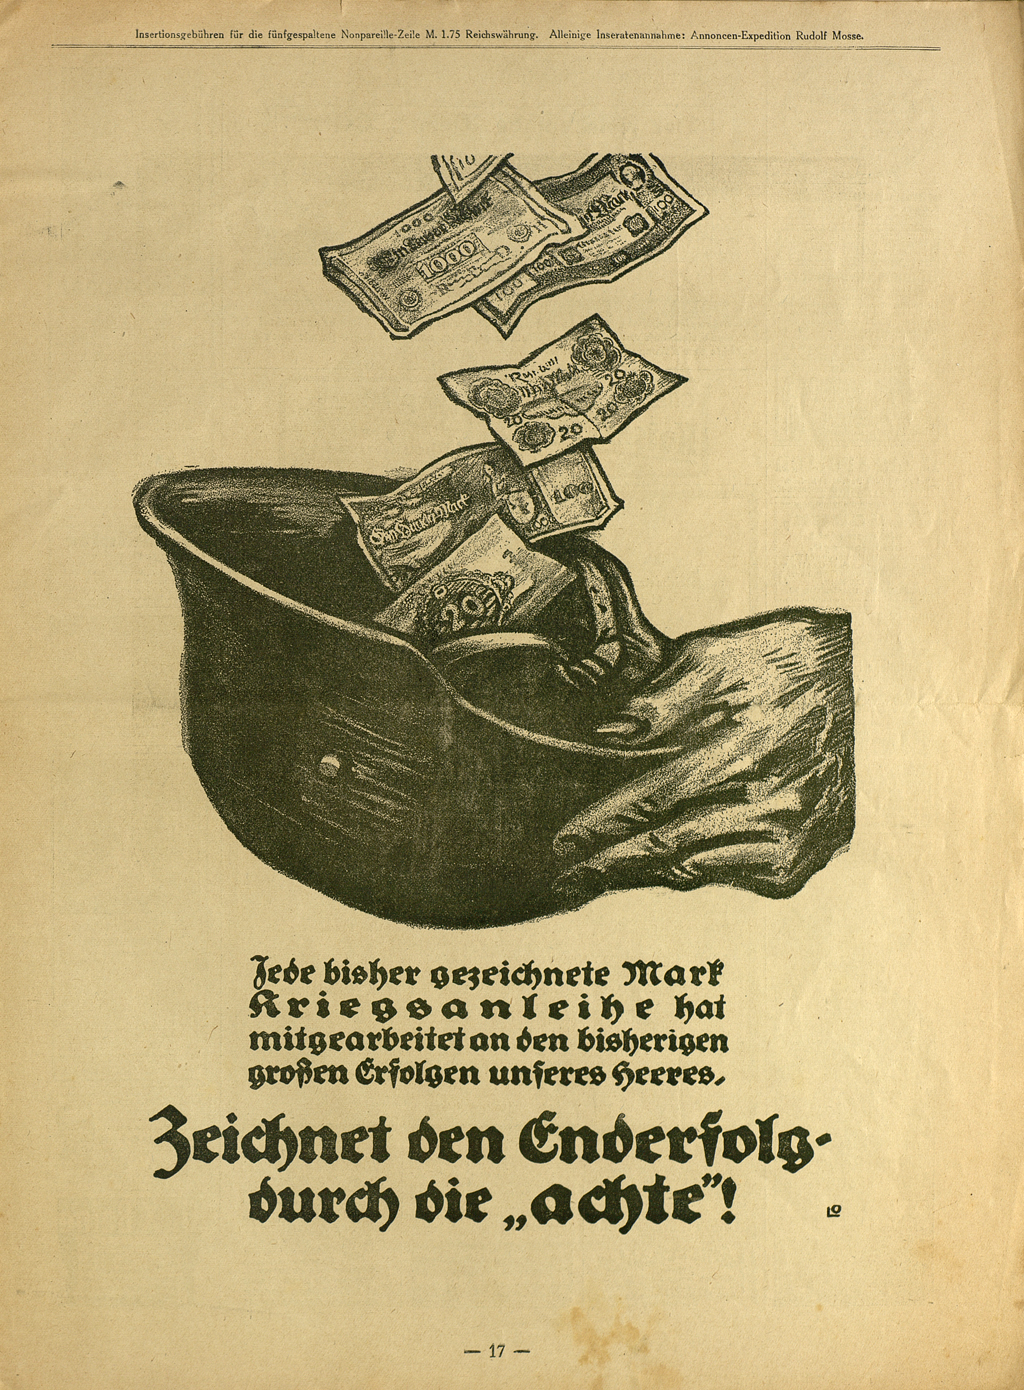 Seite aus der Wochenschrift "Simplicissimus", abgebildet ist ein Helm in den Geldscheine fallen.